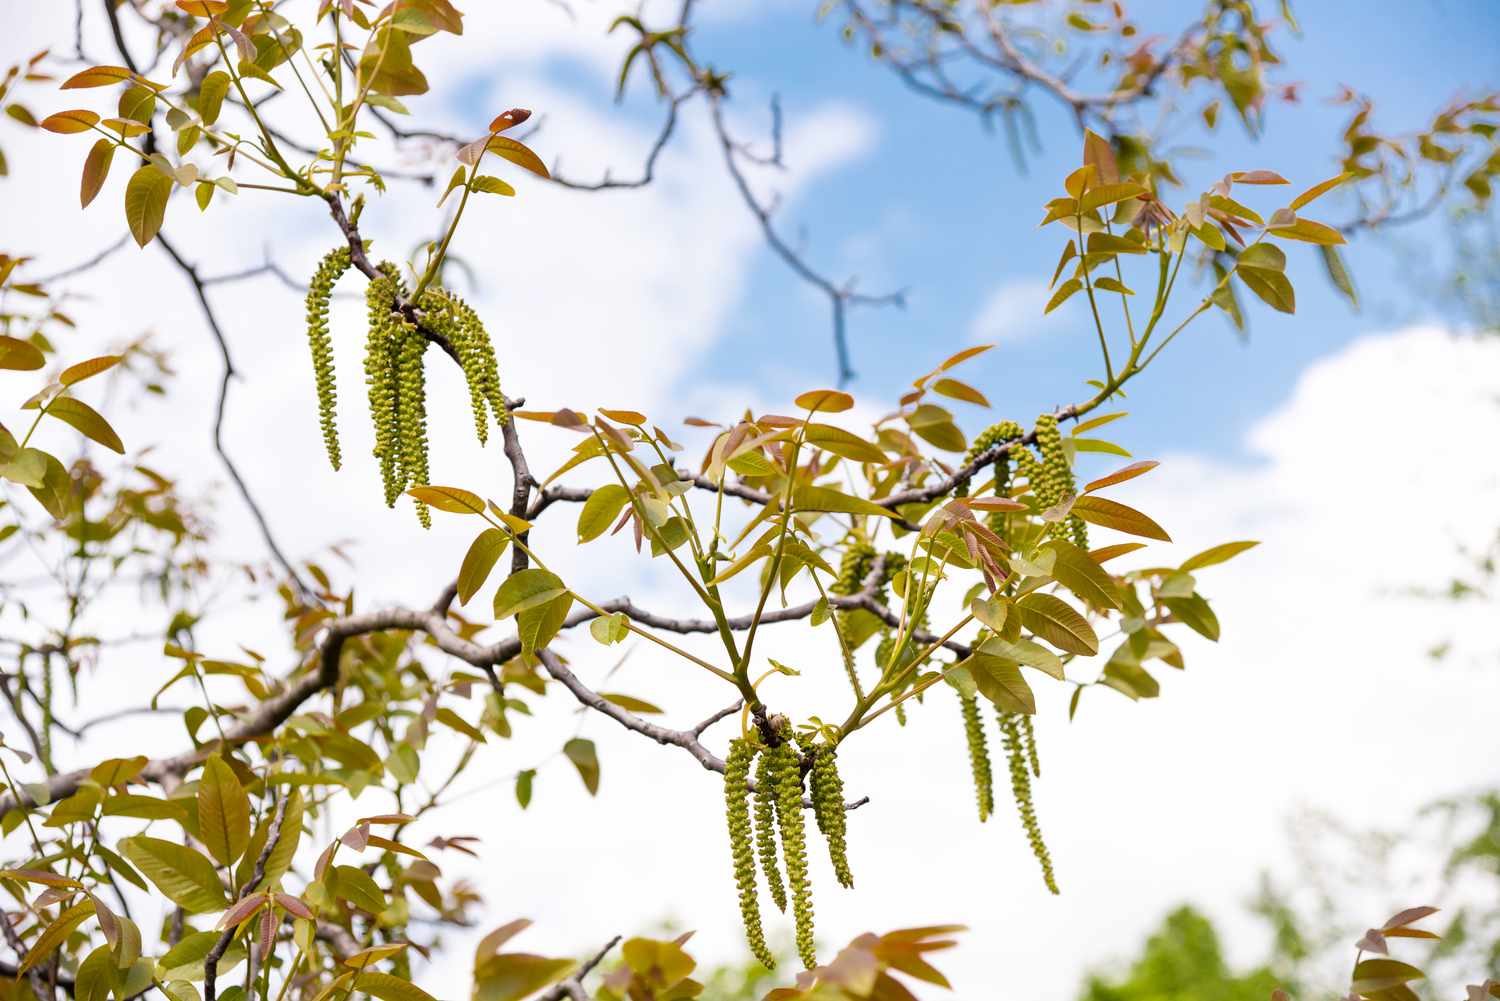 Englischer Walnussbaum Zweige mit rötlich-grünen Blättern und hellgrünen Kernen hängen